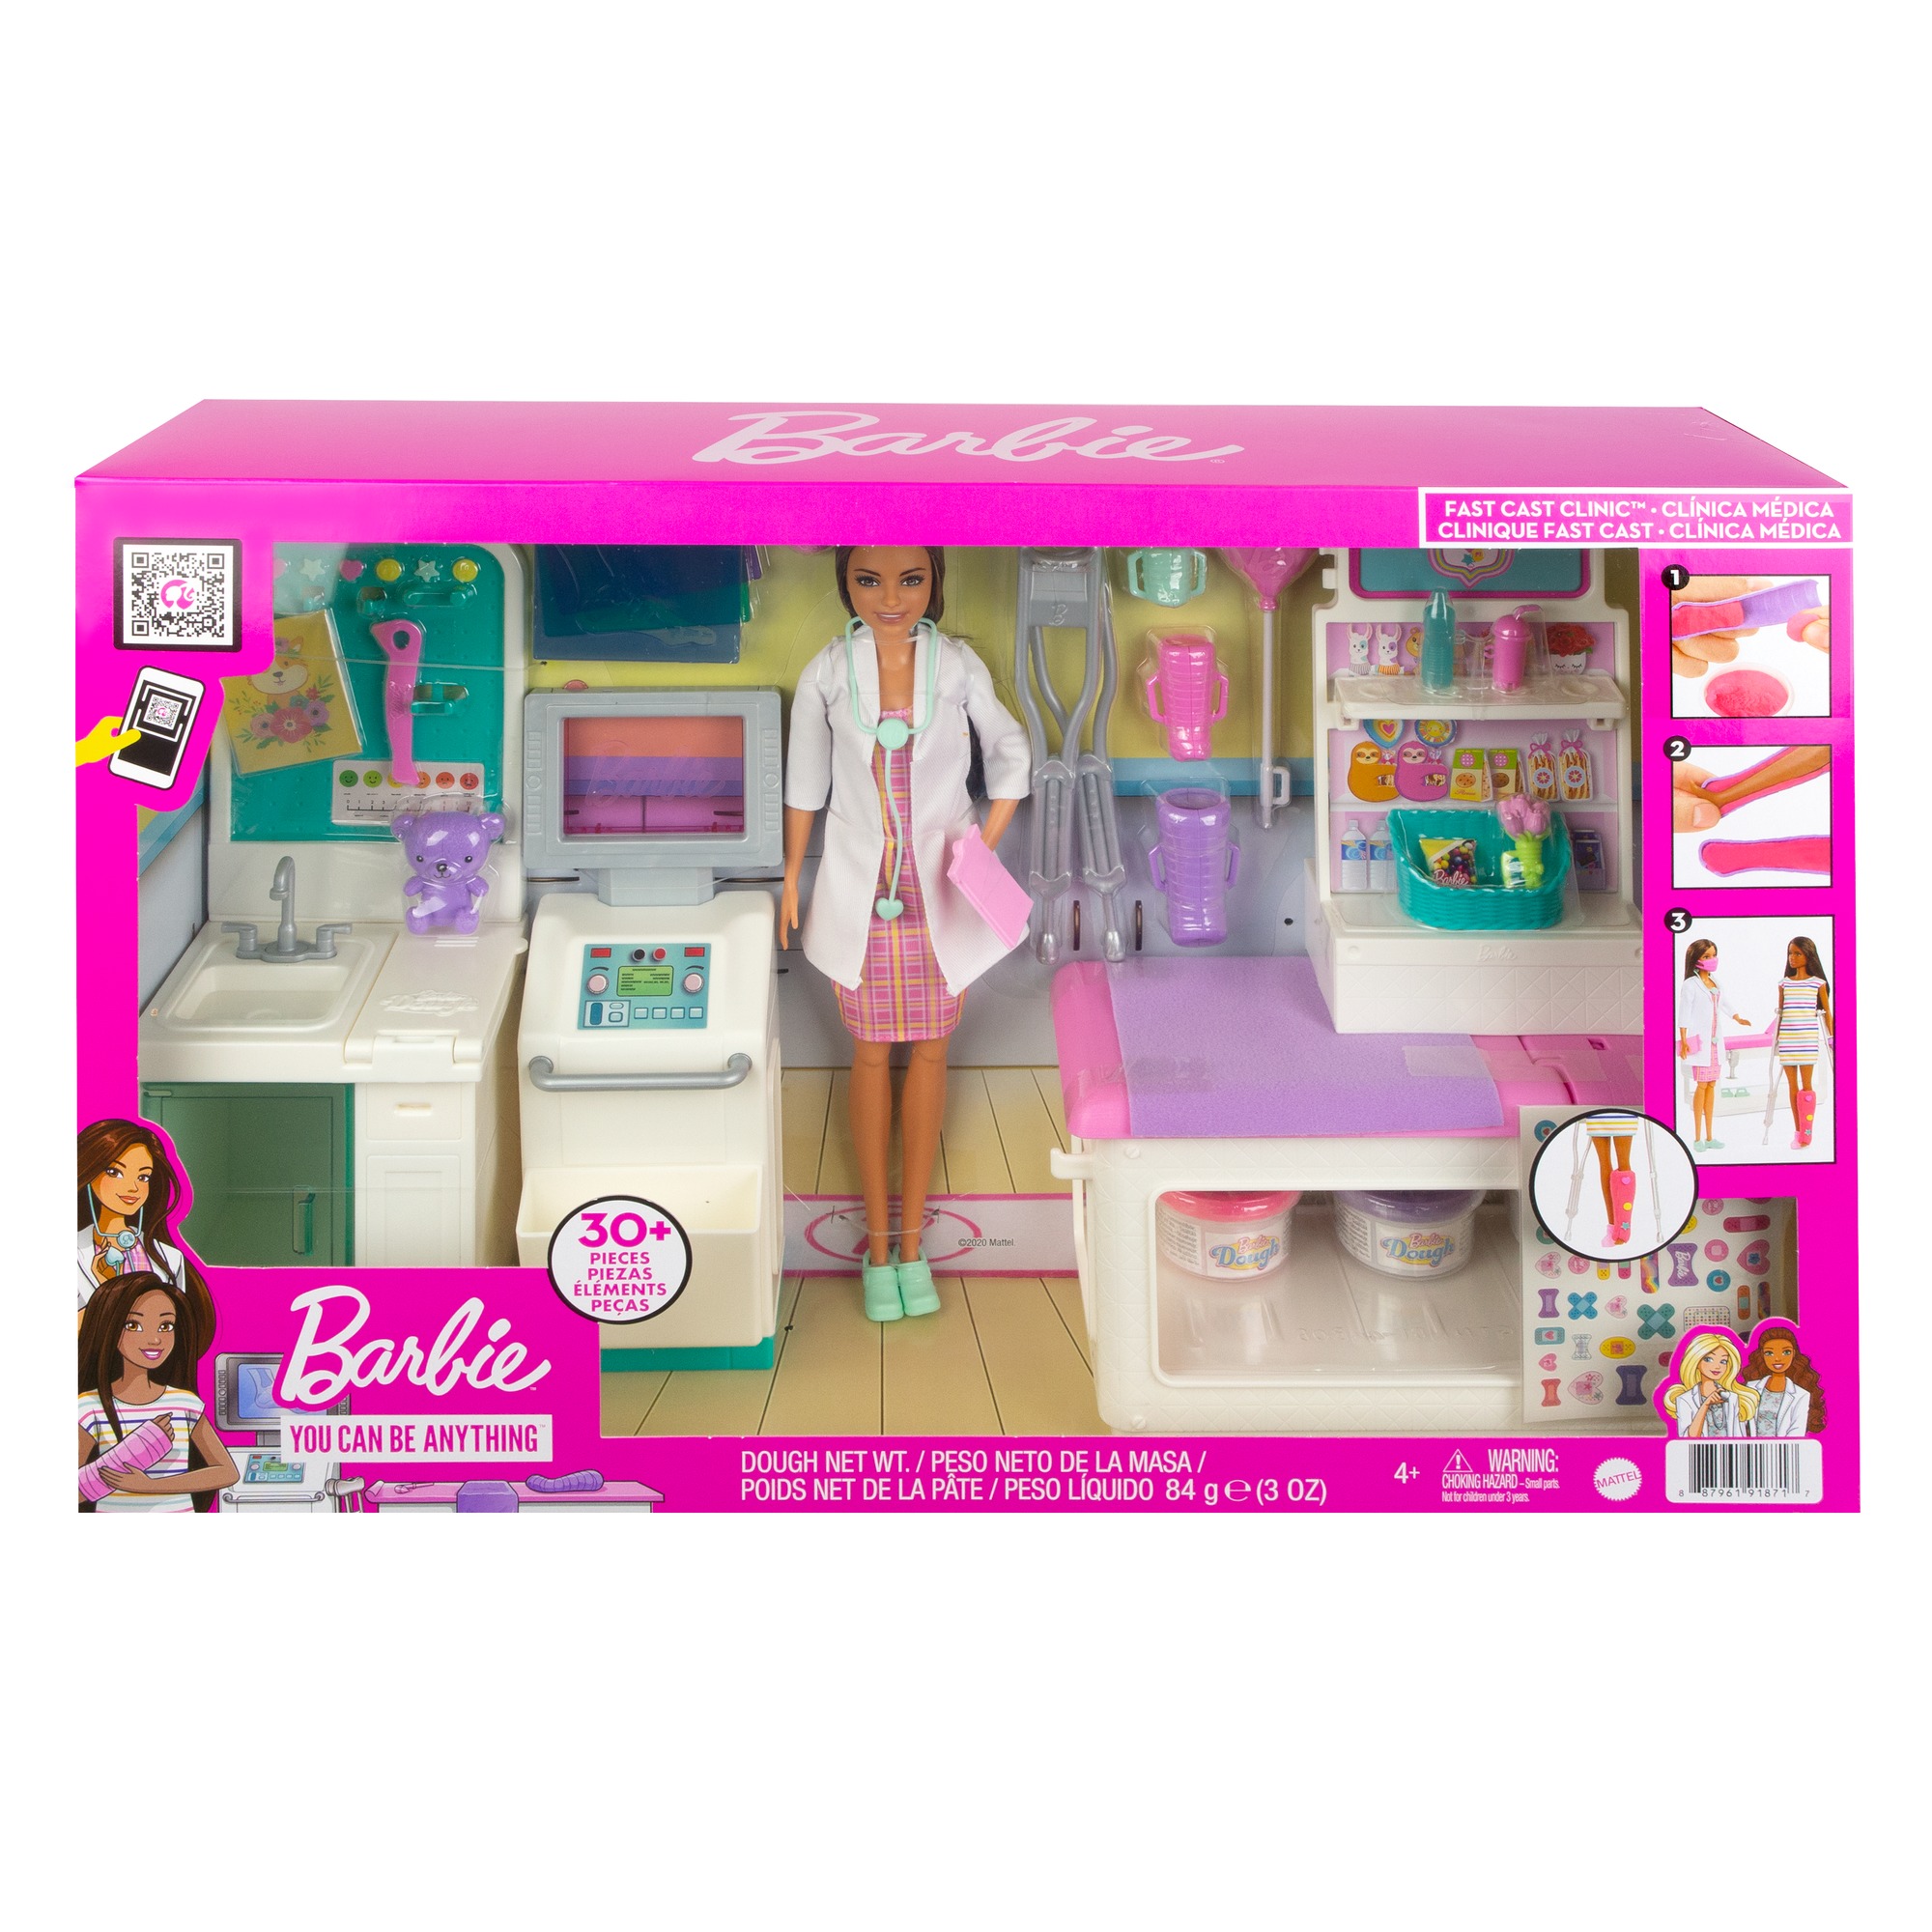 Barbie - dottoressa clinica di pronto soccorso, con capelli scuri, 4 aree da gioco ed oltre 30 pezzi inclusi, per bambini 3+ anni - Barbie